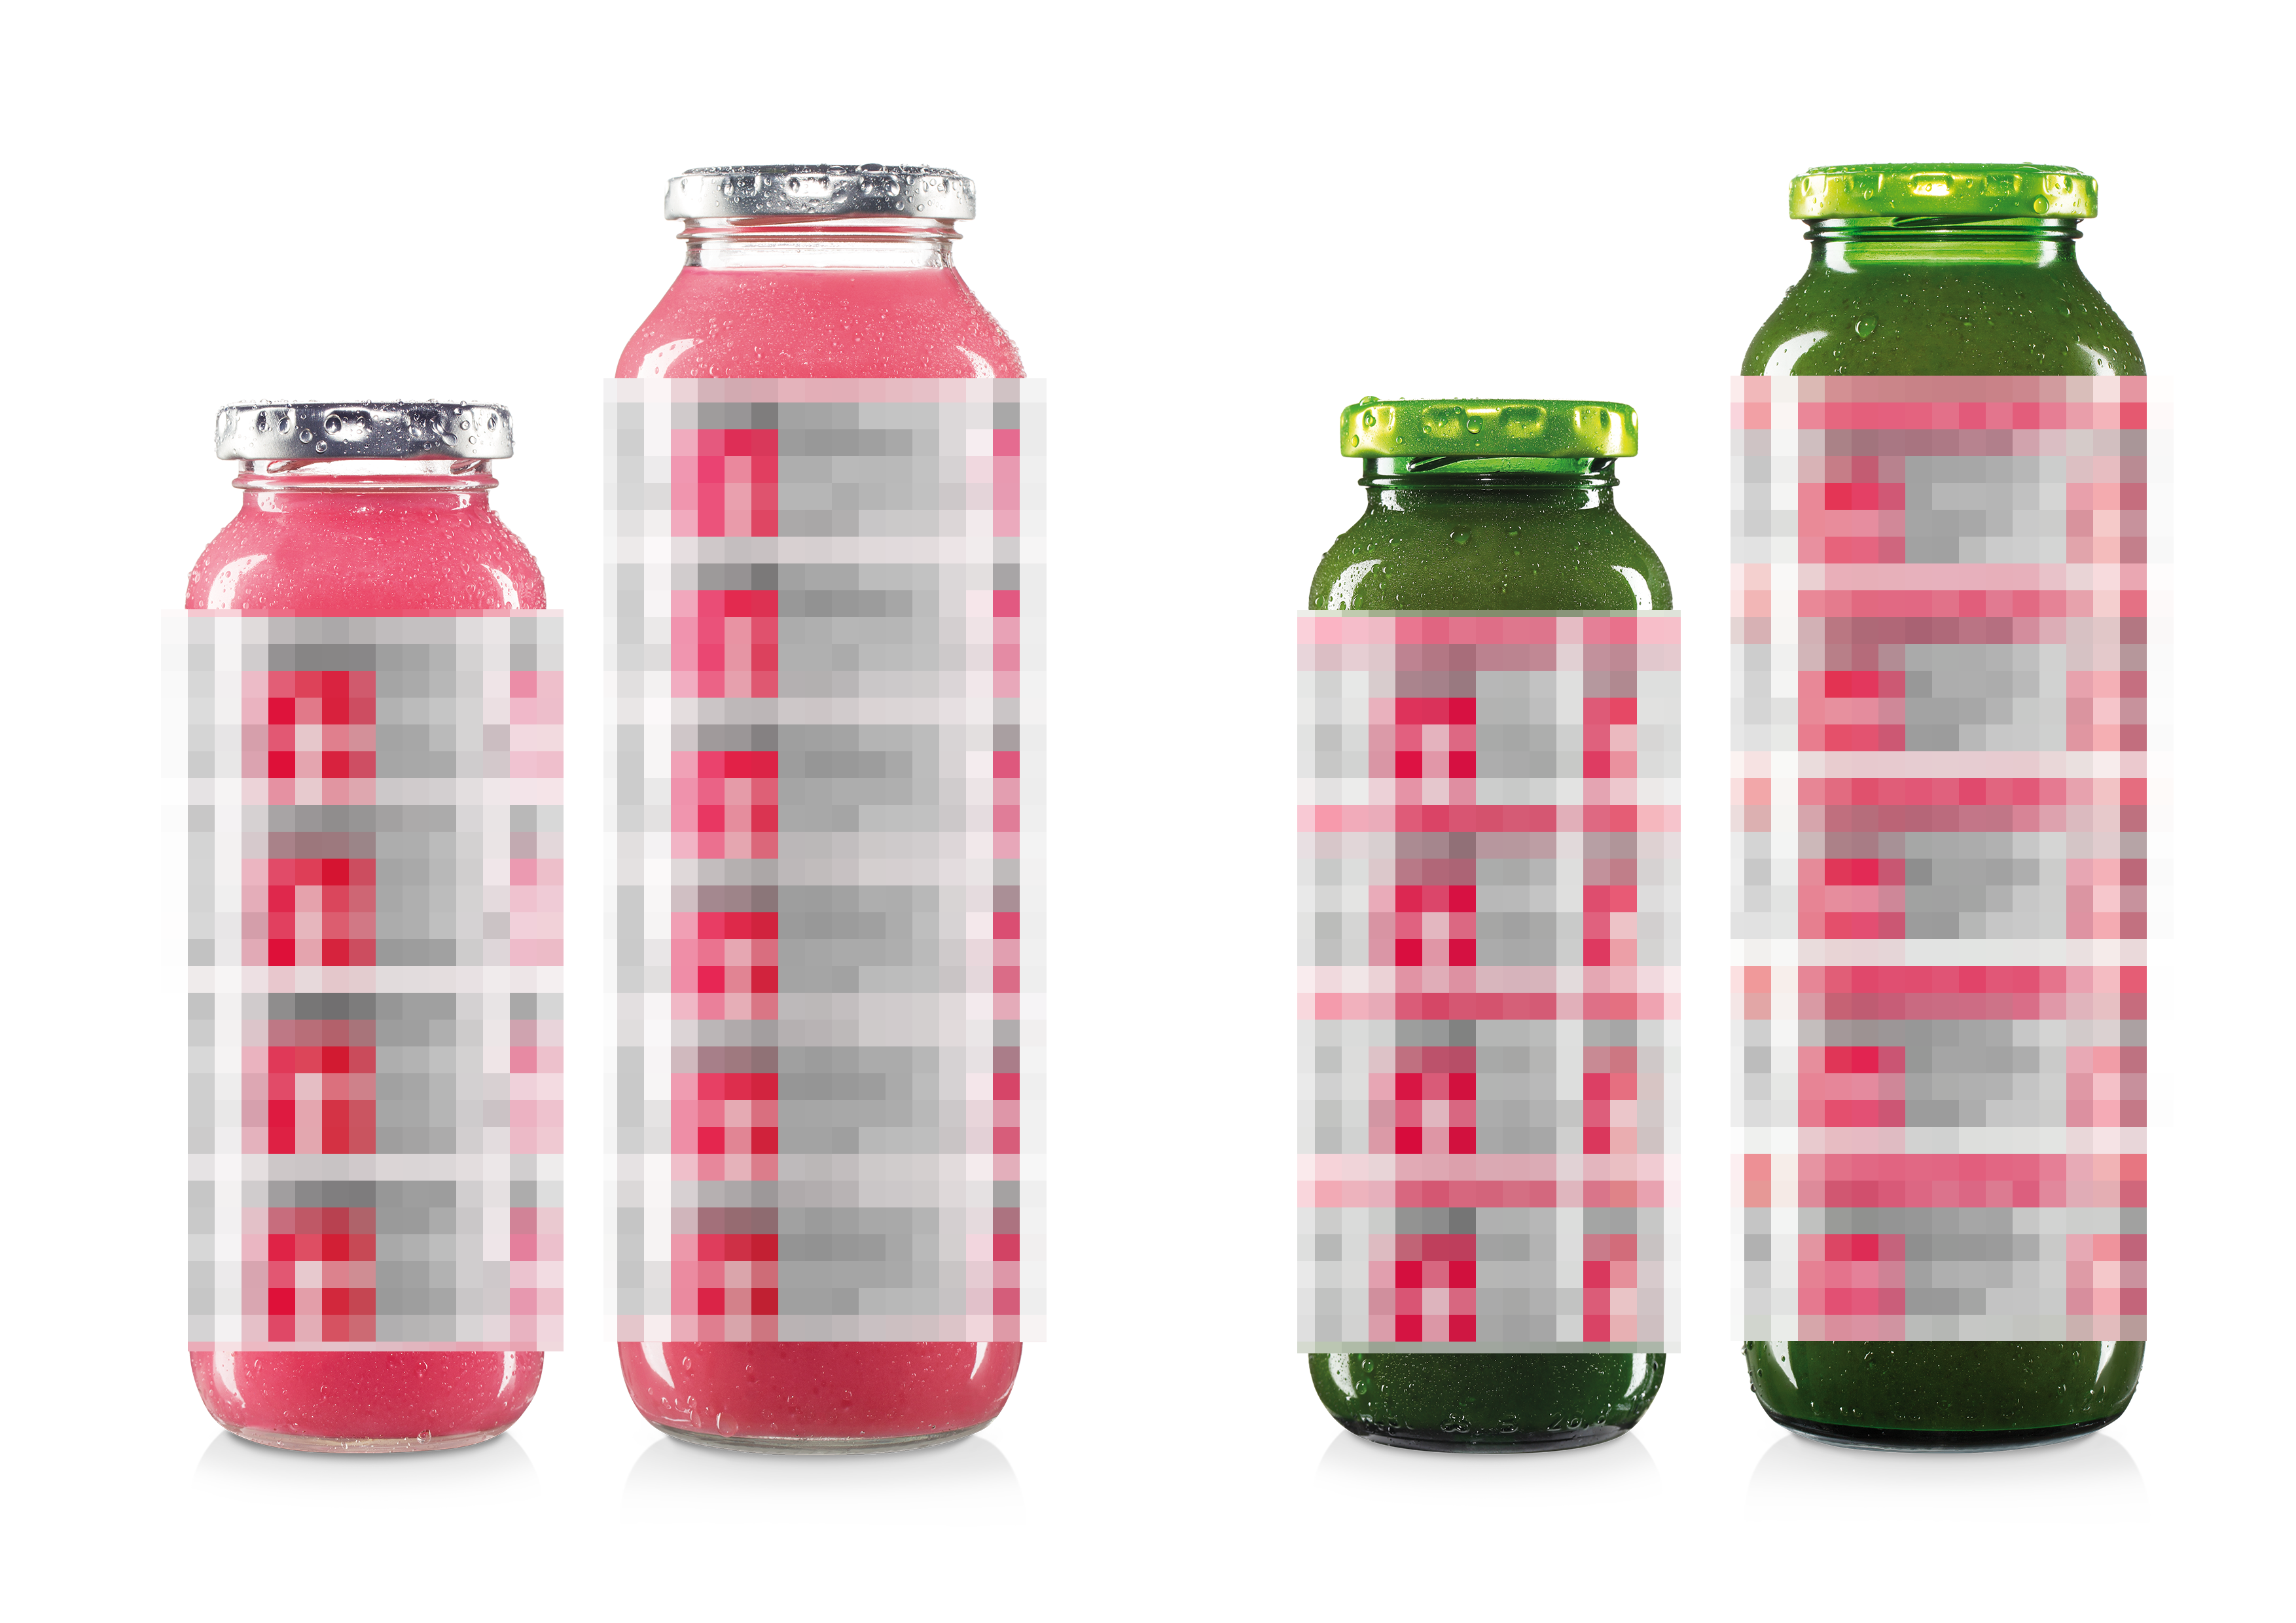 ¡Somos campeones (y subcampeones)! A principios de 2021, la organización de consumidores Stiftung Warentest calificó nuestro green smoothie n.º 1 como MUY BUENO (1,5) y nuestro smoothie pink como BUENO (2,0). Estamos orgullosos de ambas botellas y por eso las hemos puesto directamente en la edición limitada n.º 17, muy discreta y reservada, como nosotros.